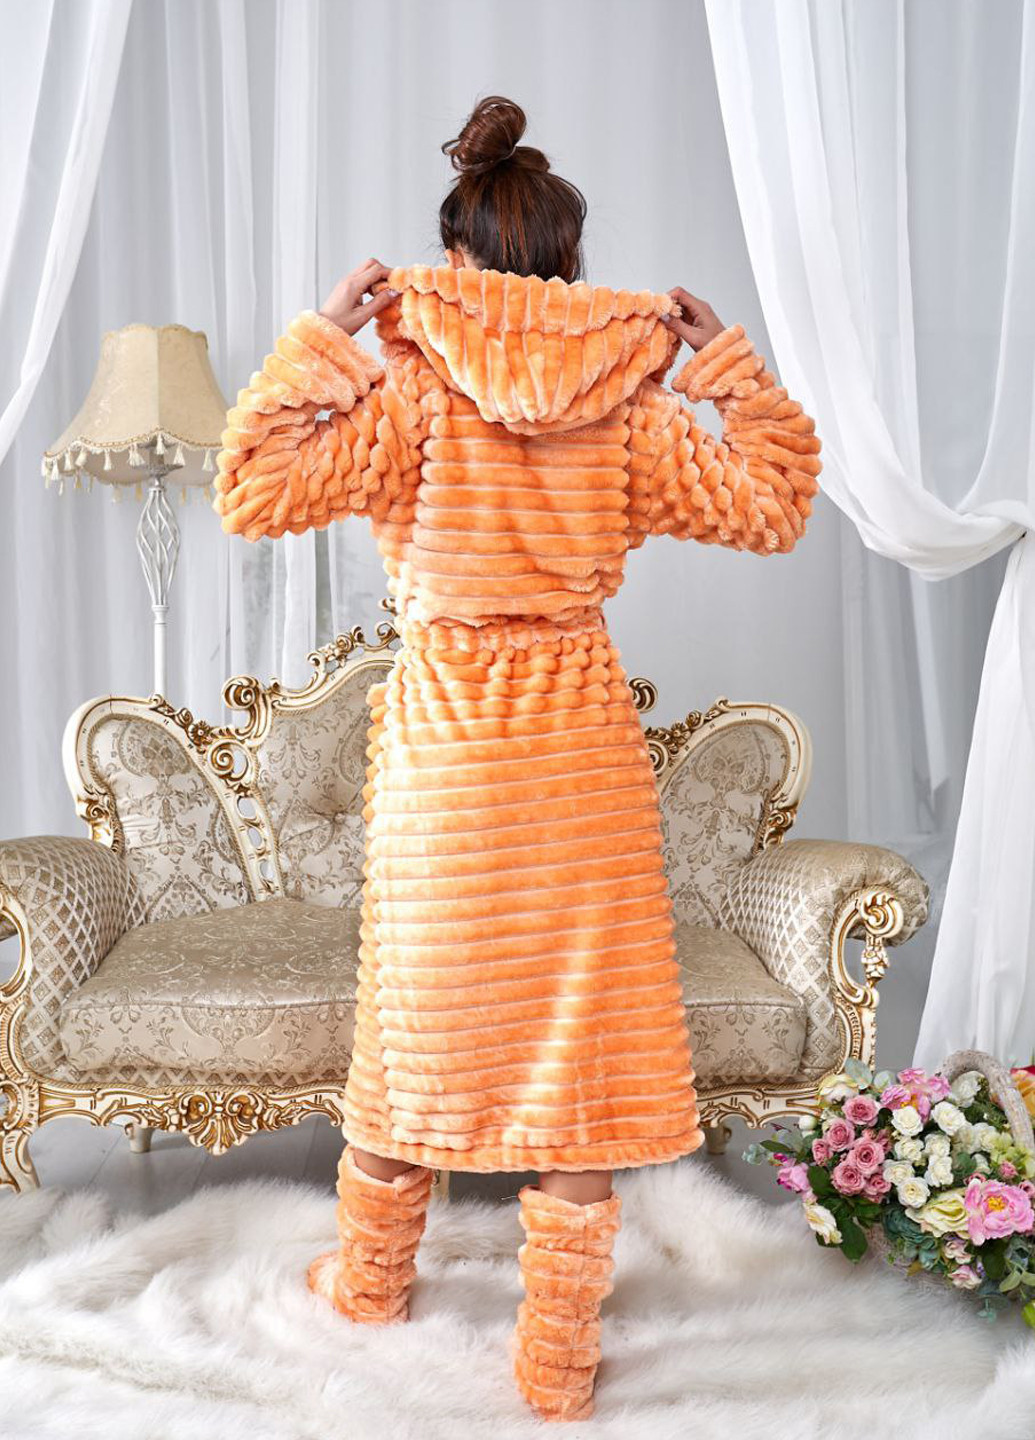 Махровый женский халат-шубка с капюшоном и комнатными сапожками в комплекте Selim-tekstil (260620074)